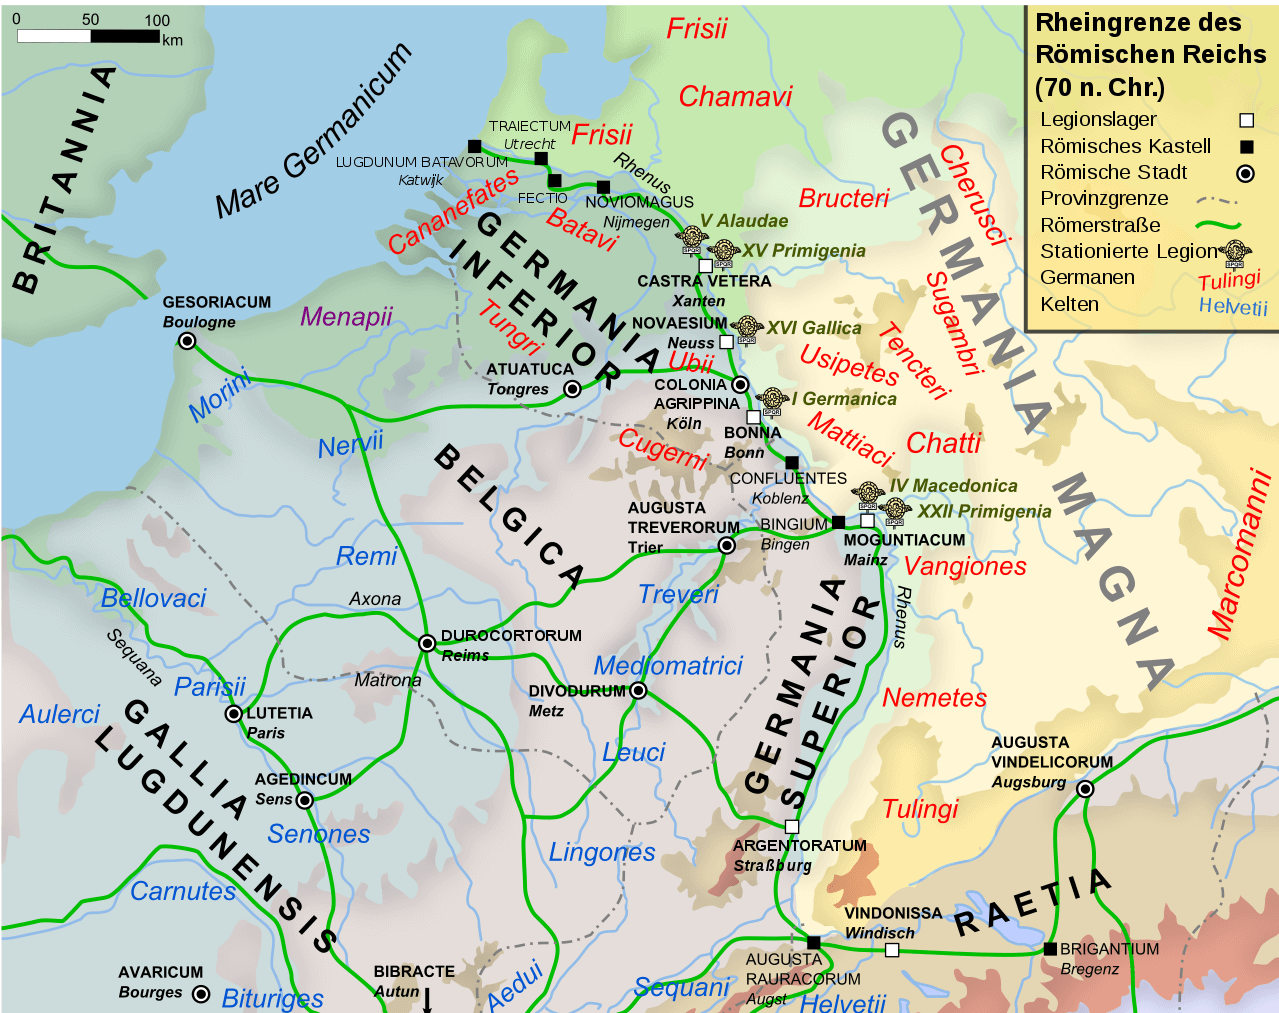 Eine Landkarte zur Rheingrenze des Römischen Reiches um 70 n. Chr. Mit den Namen einheimischer Volksgruppen.